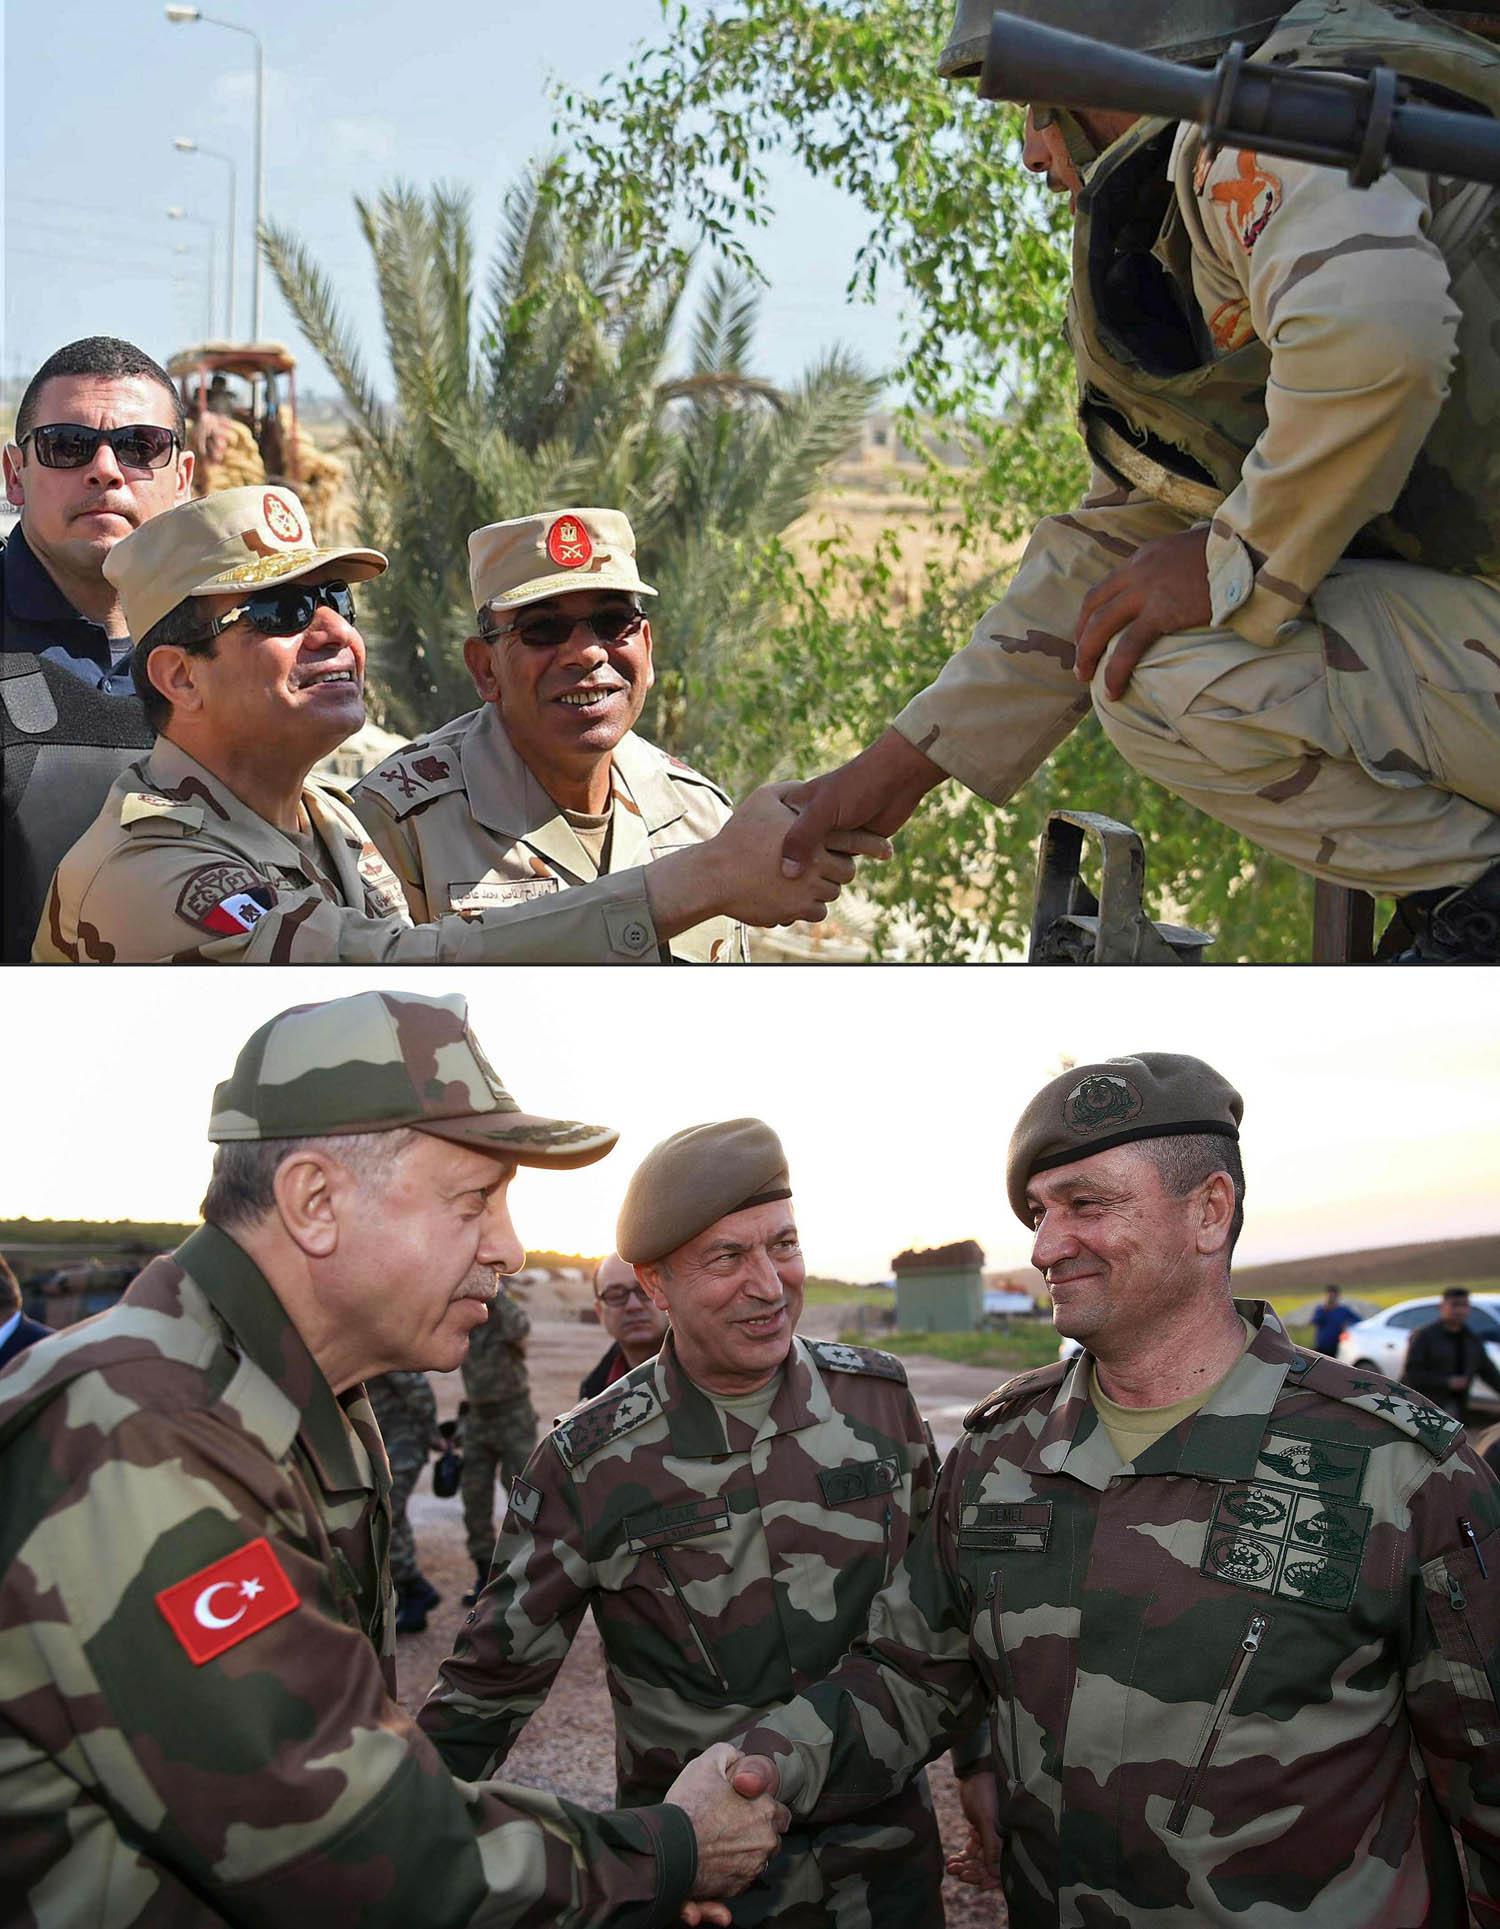 صورتان للرئيس المصري عبدالفتاح السيسي والتركي رجب طيب أردوغان مع أفراد في القوات المسلحة